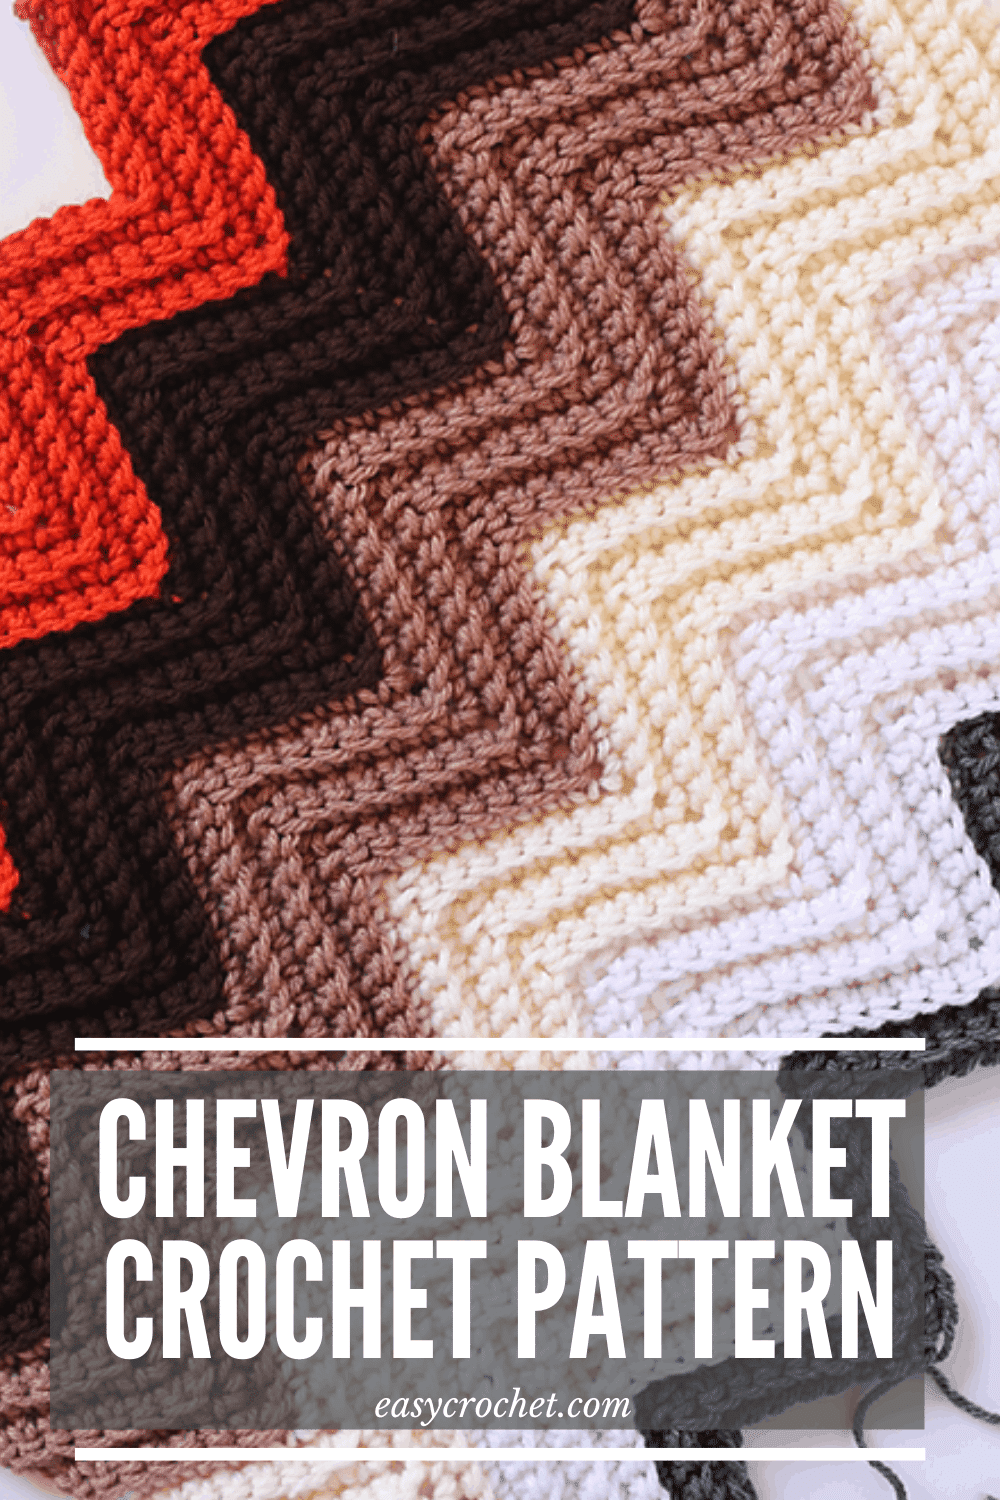 Crochet Afghan Blanket Crochet Chevron Blanket Crochet Lap Blanket Crochet Striped Blanket Crochet Baby Blanket Baby Blanket Crochet